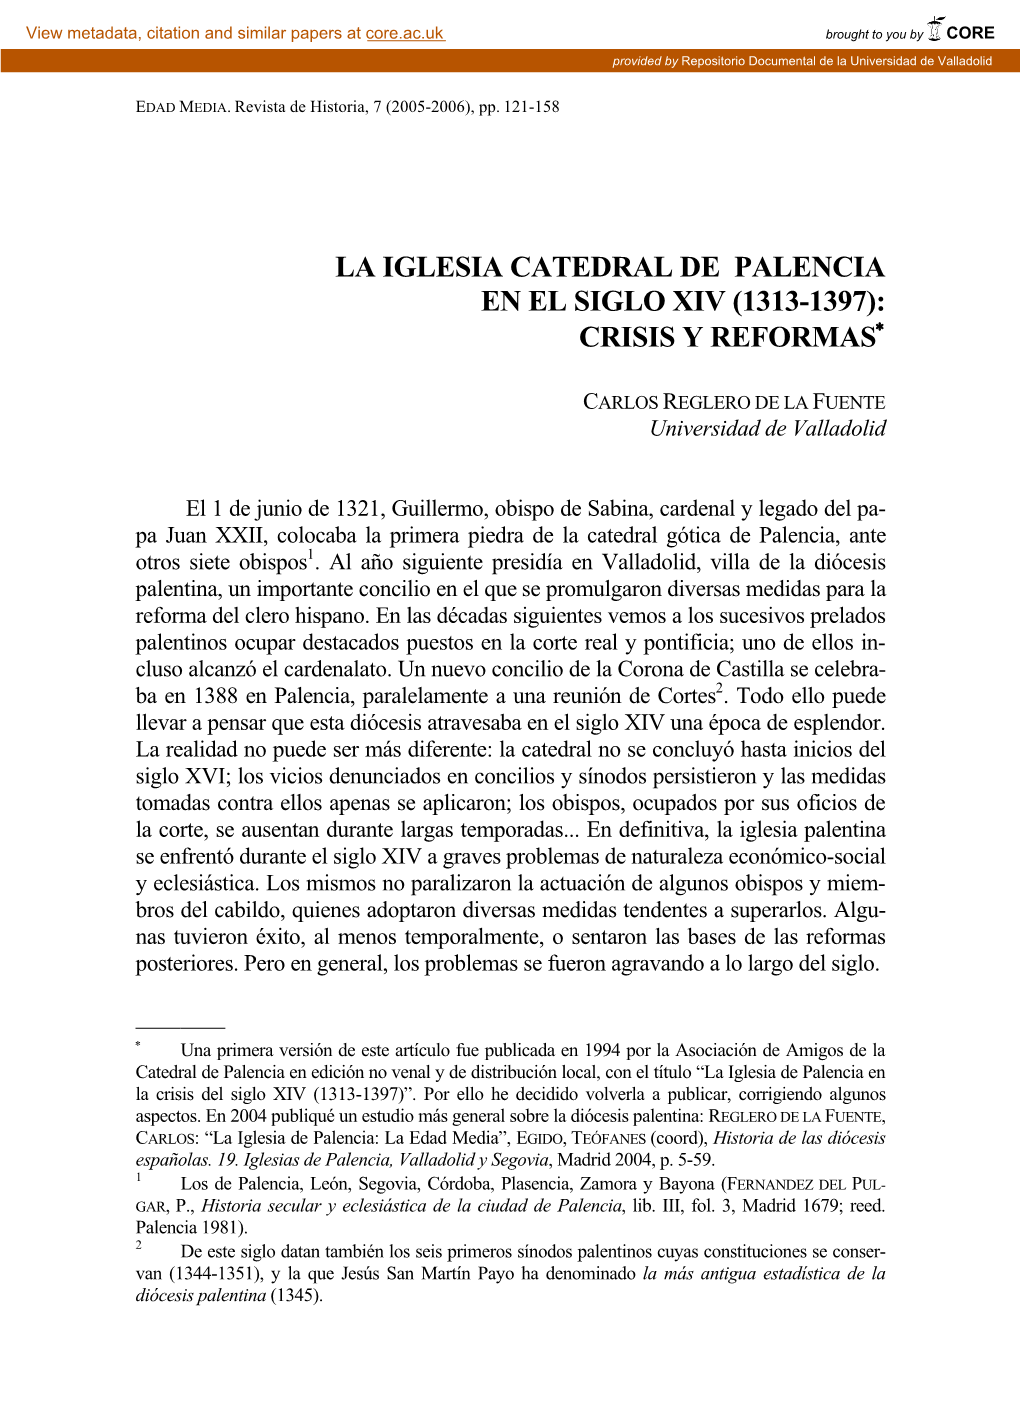 La Iglesia Catedral De Palencia En El Siglo Xiv (1313-1397): Crisis Y Reformas∗